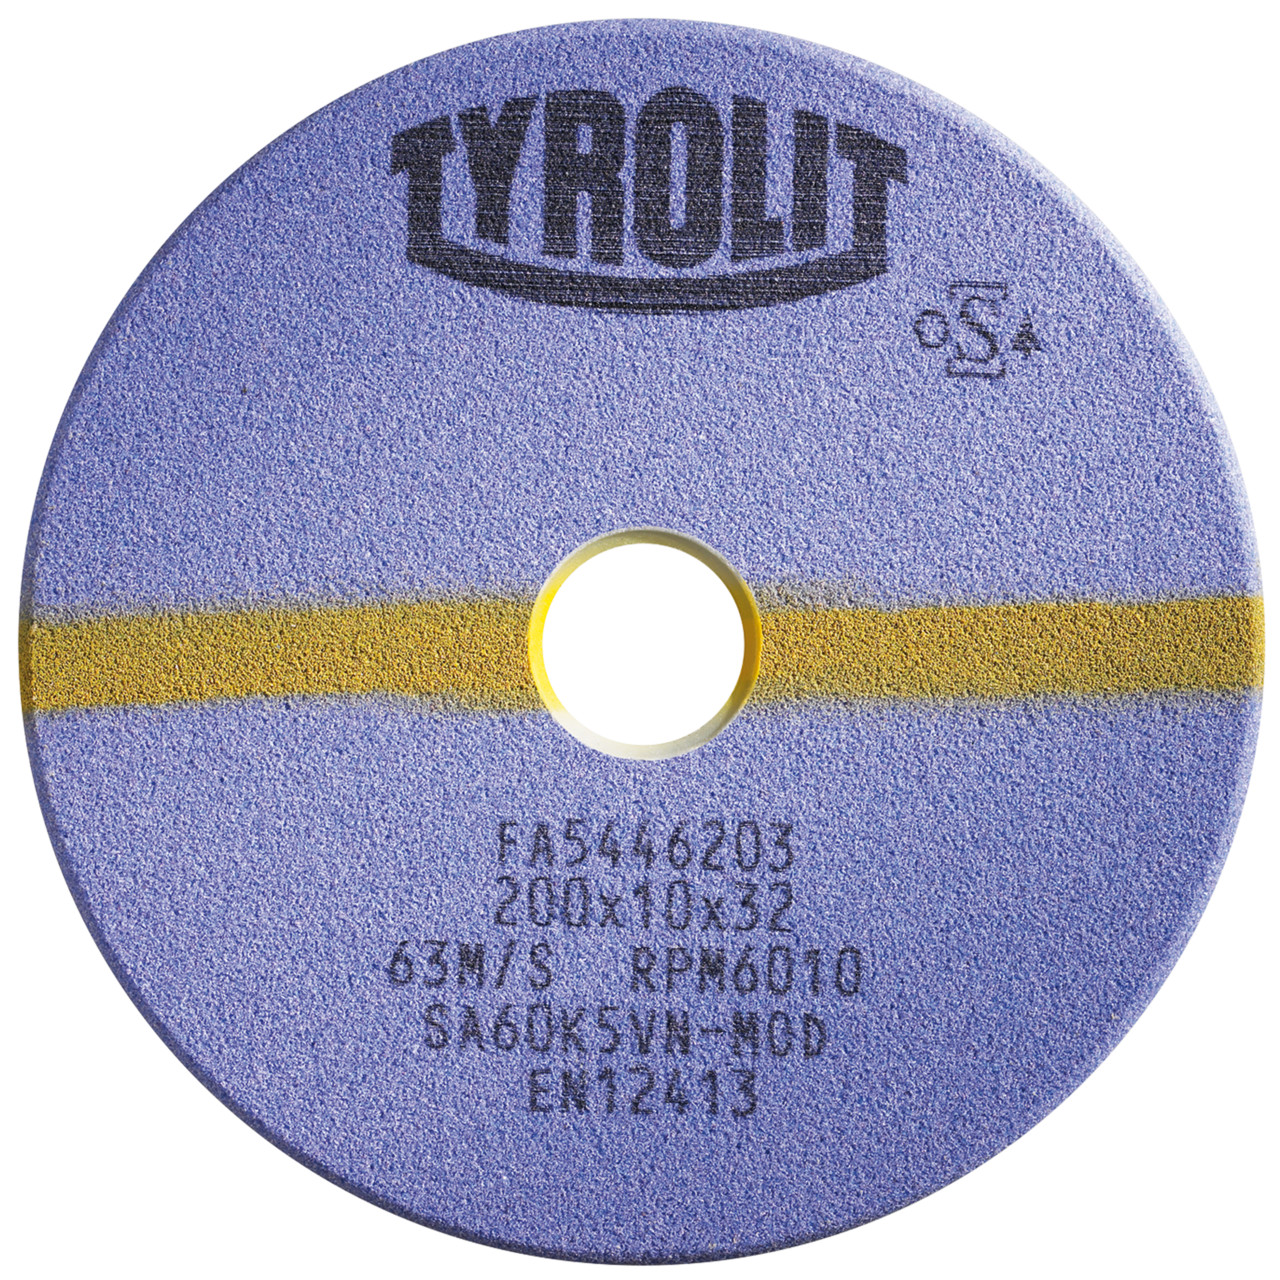 TYROLIT Schleifwerkzeuge für Sägeschärfautomaten DxTxH 200x2x32 Für Kreissägen und stellitierte Band- und Gattersägen, Form: 1C, Art. 922857